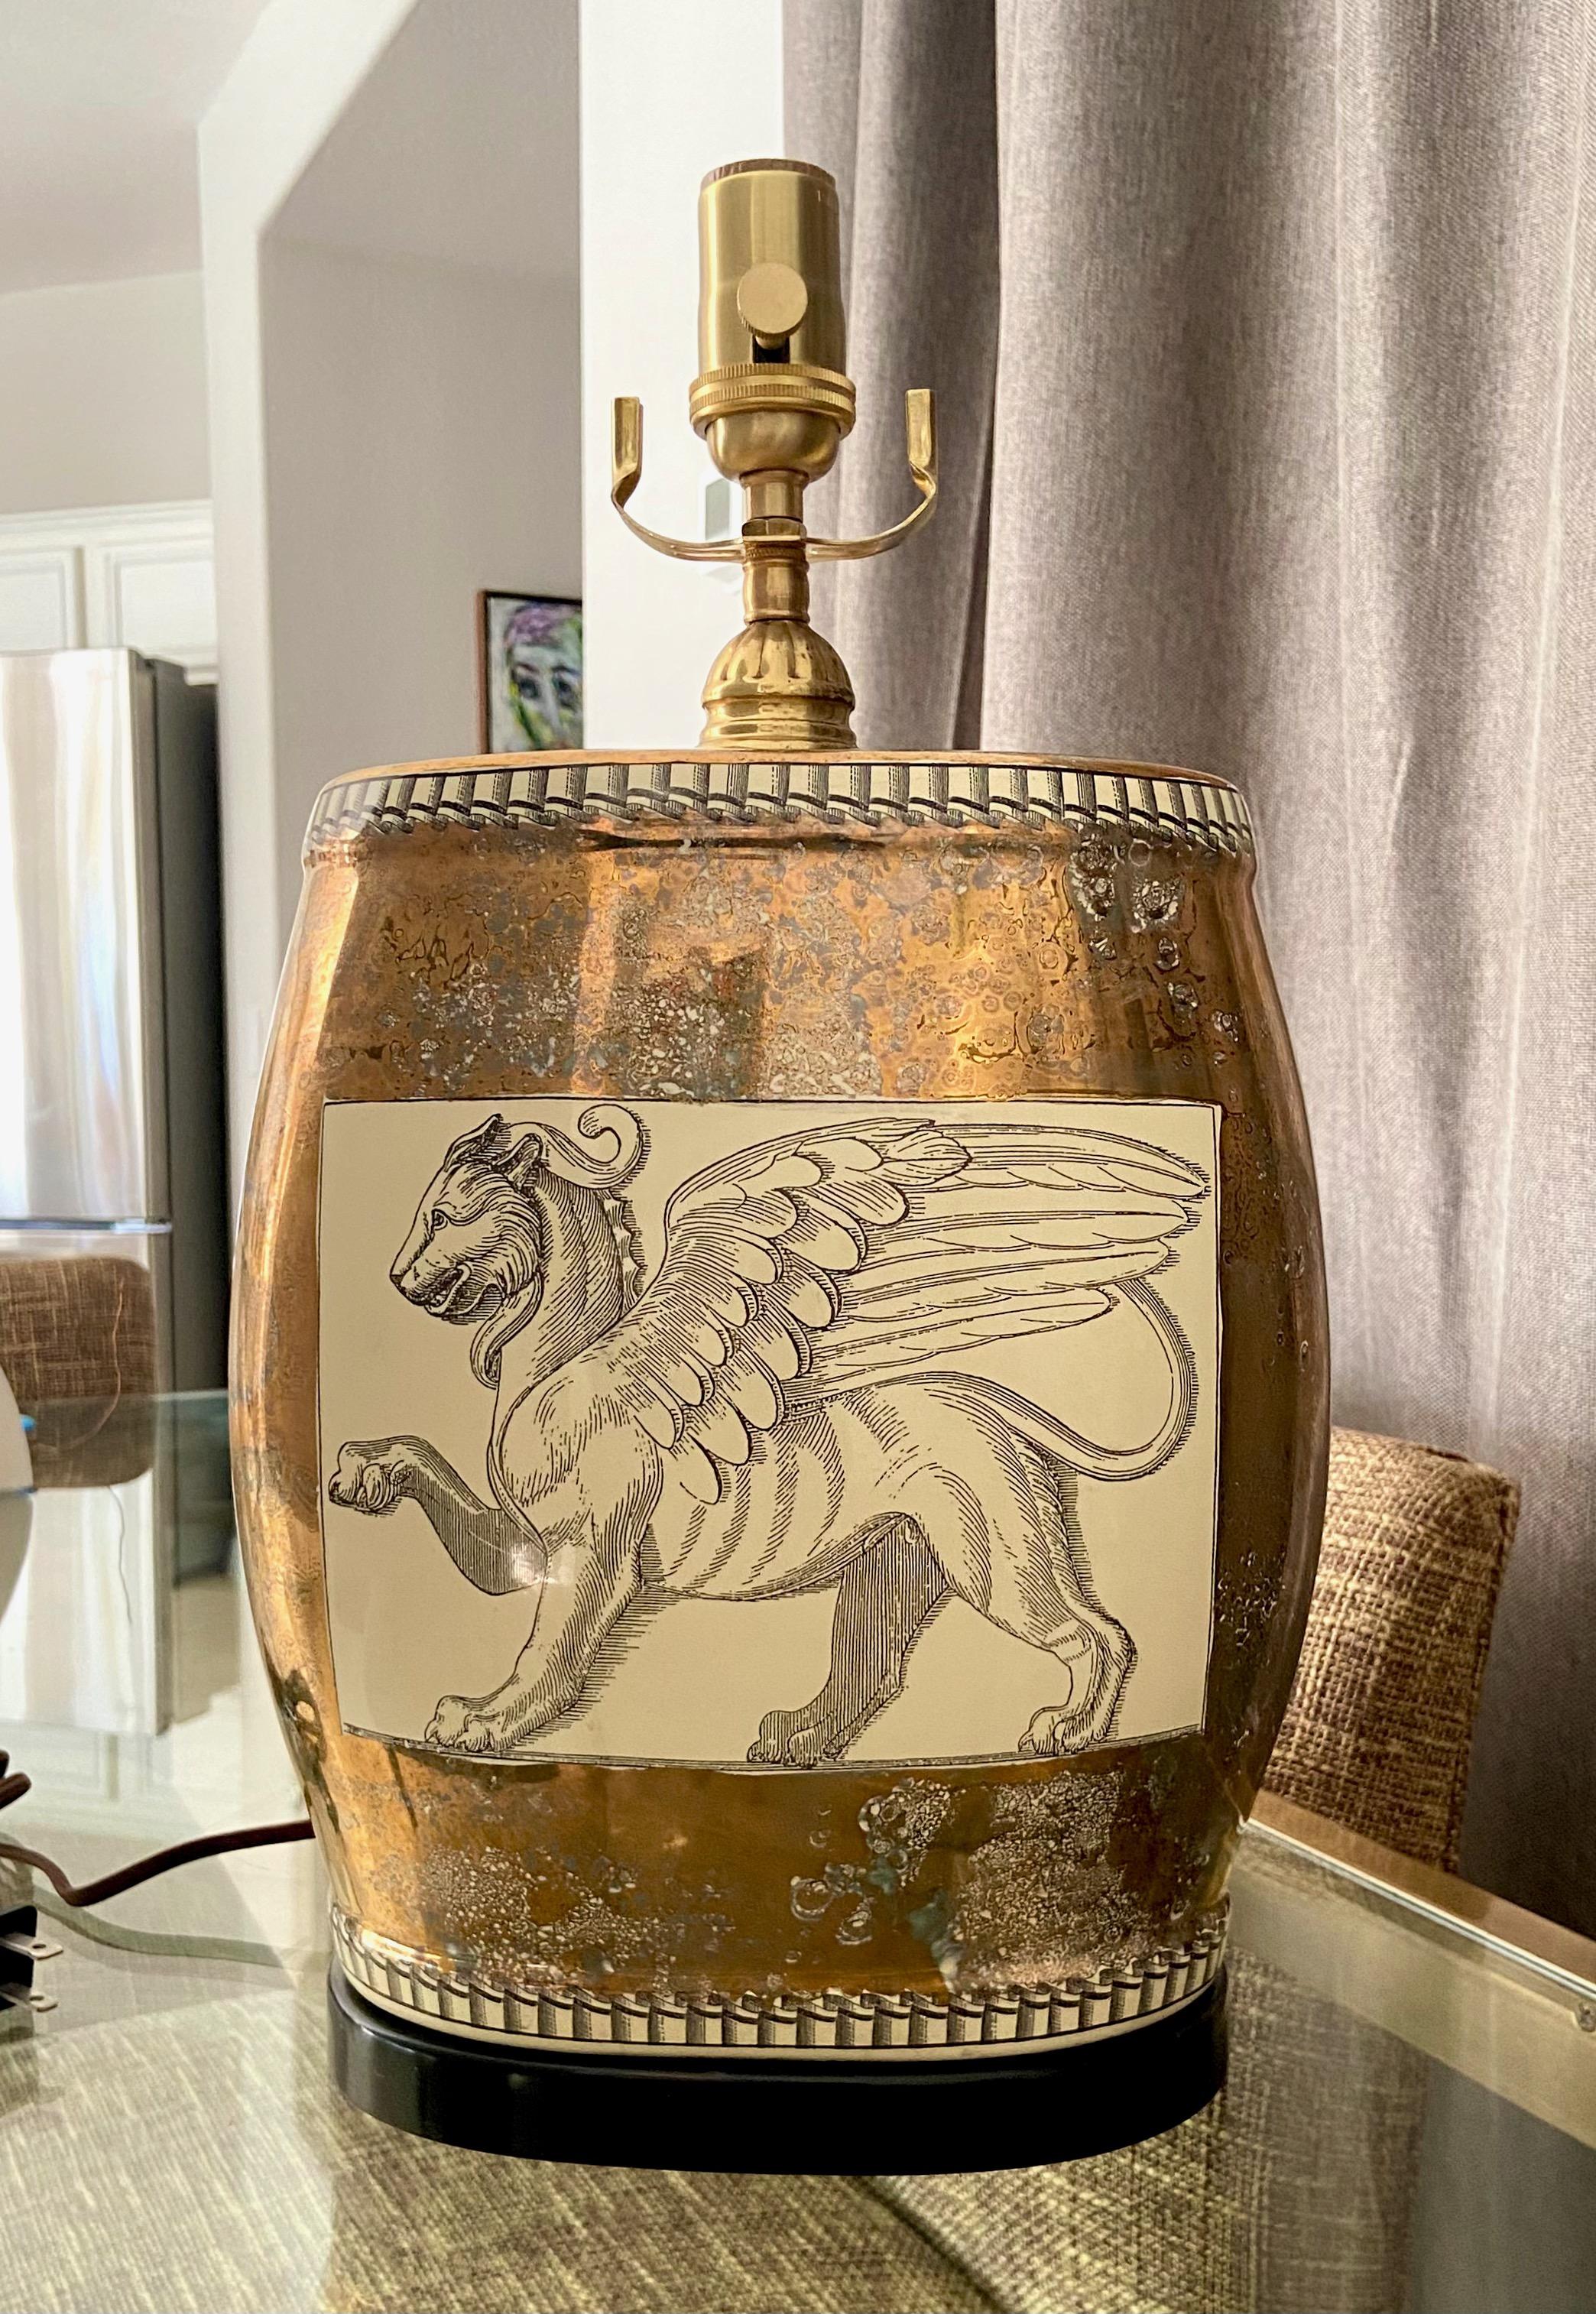 Lampe de table simple en porcelaine de forme ovale avec un motif de Lion de Griffon. La couleur de la porcelaine consiste en un contour noir des griffons sur un fond taupe (devant et derrière) entouré d'une finition miroir mouchetée de cuivre et de